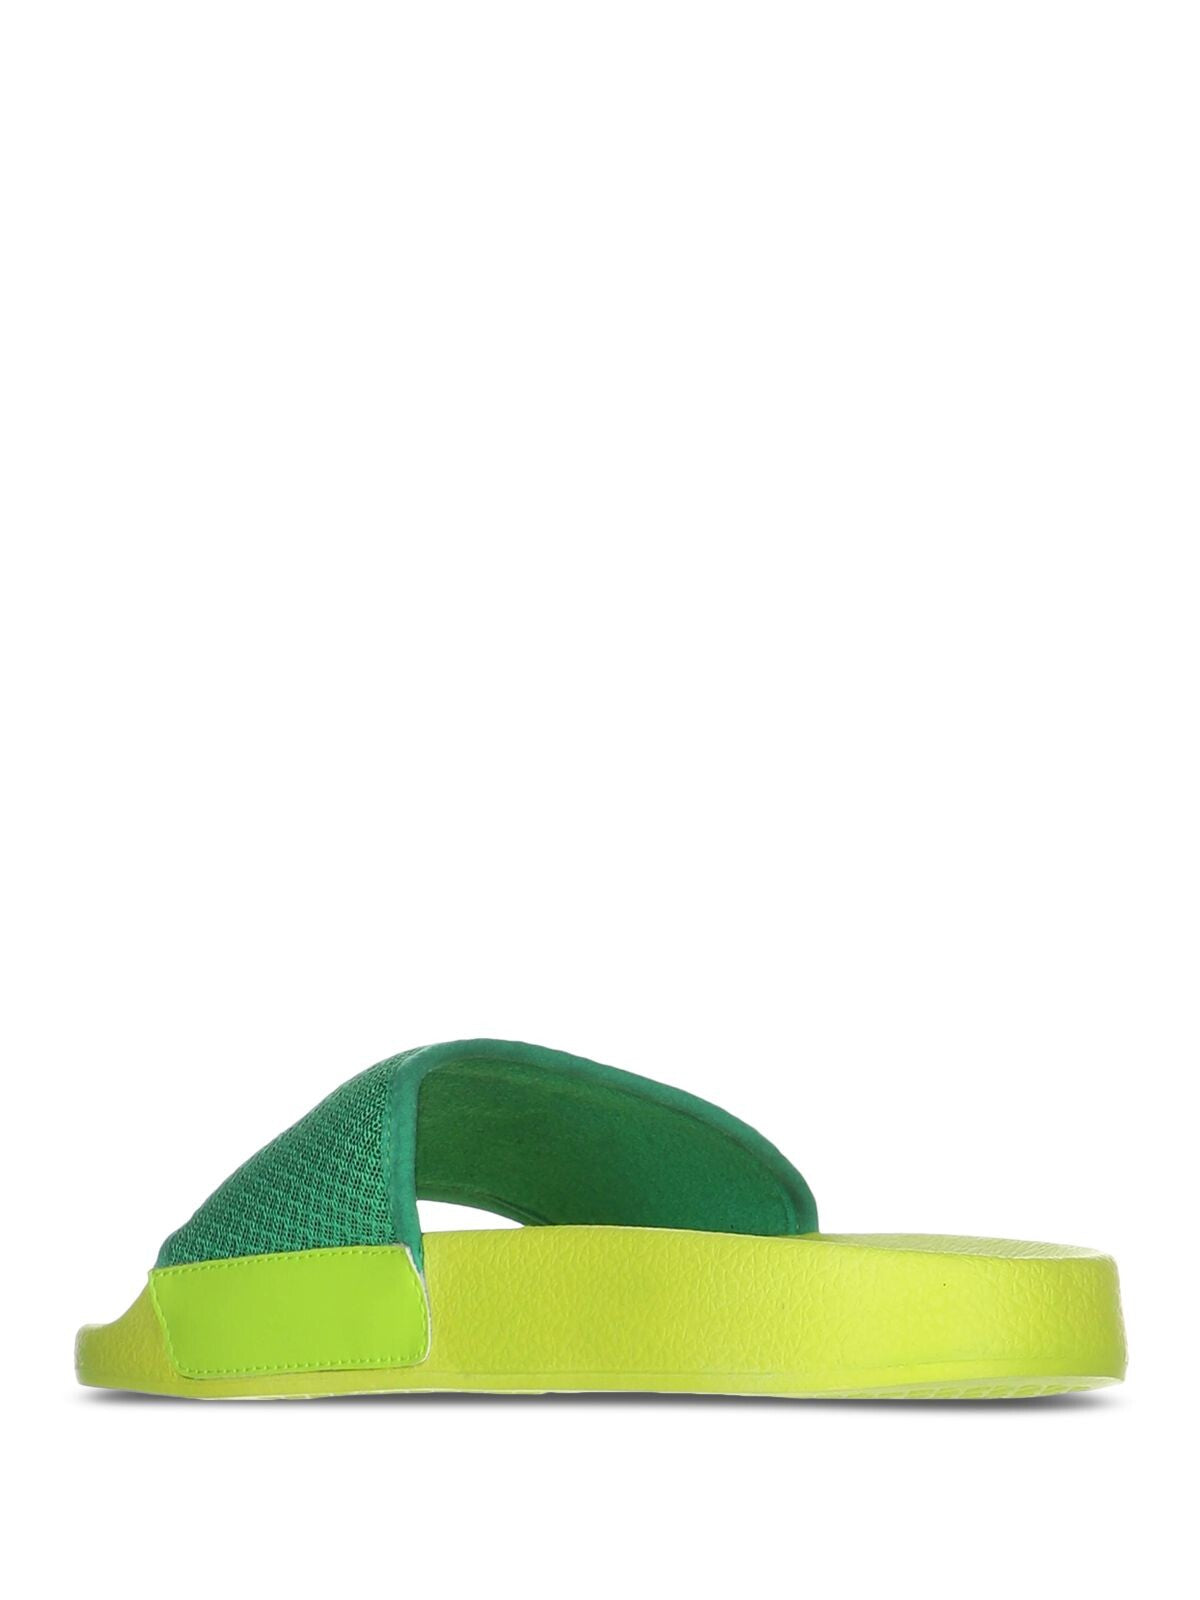 PRINCE Womens Green Logo Comfort Prism Round Toe Platform Slip On Slide Sandals Shoes 37